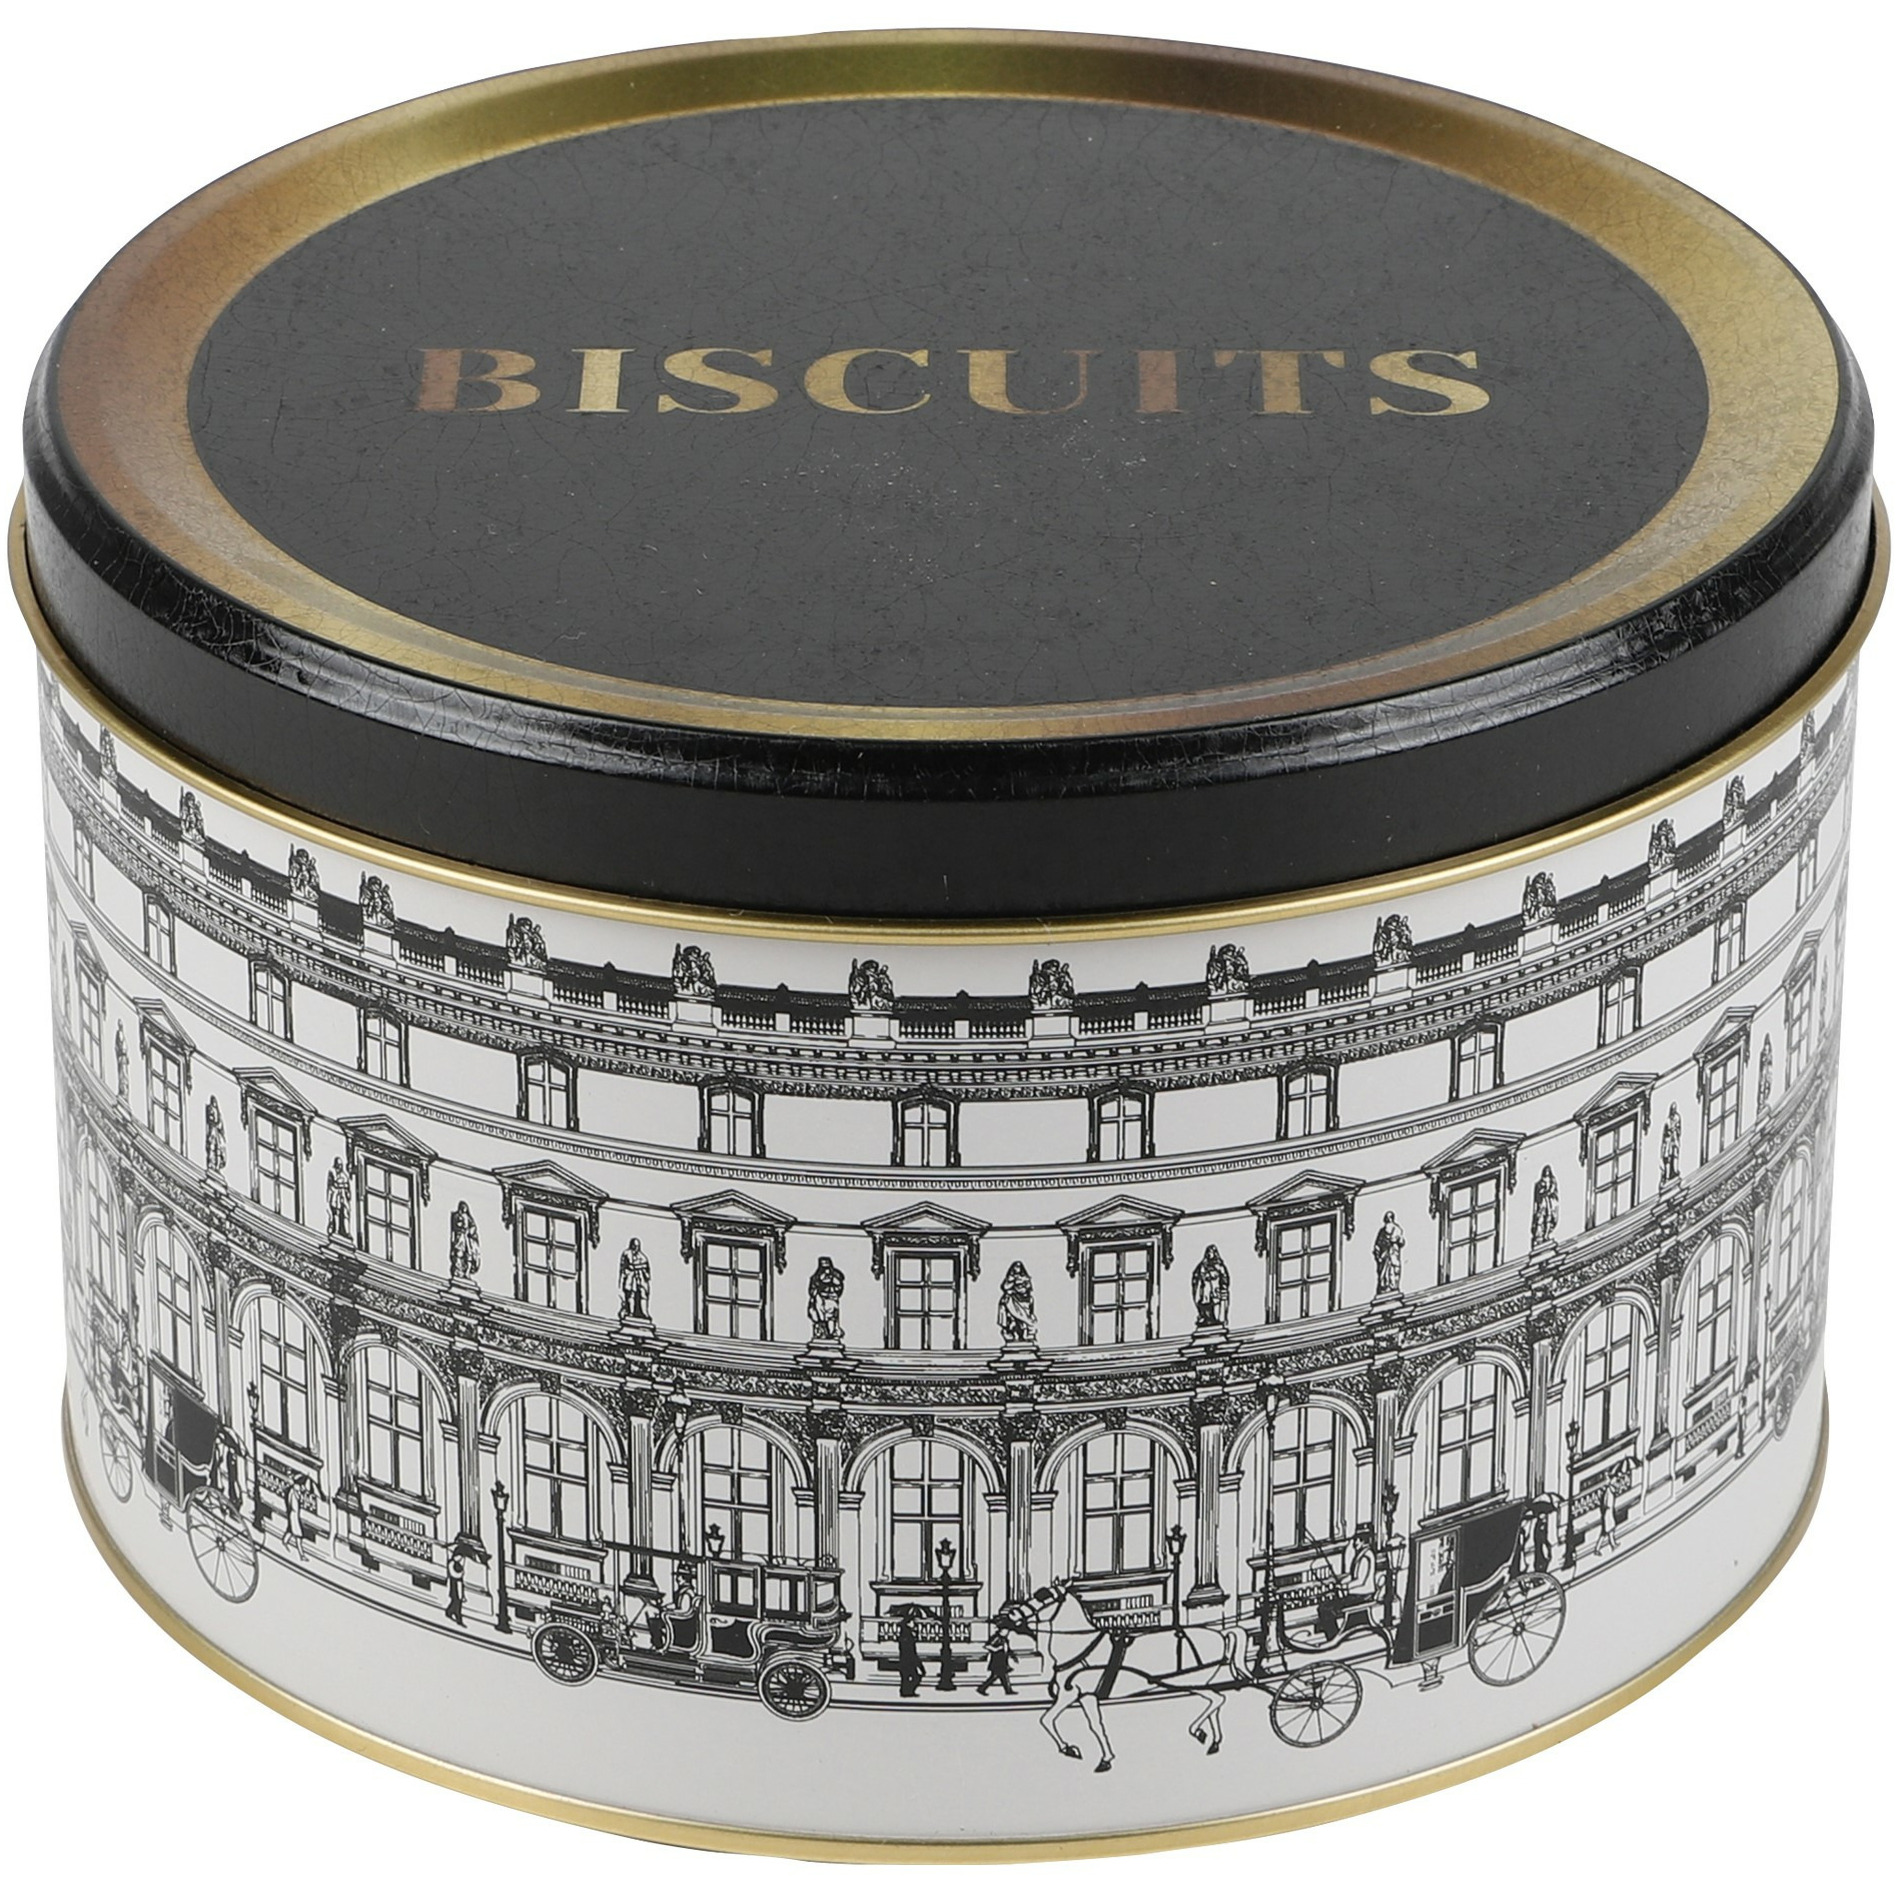 Urban Living koektrommel-voorraadblik Biscuits Versailles metaal wit-zwart 17 x 11 cm